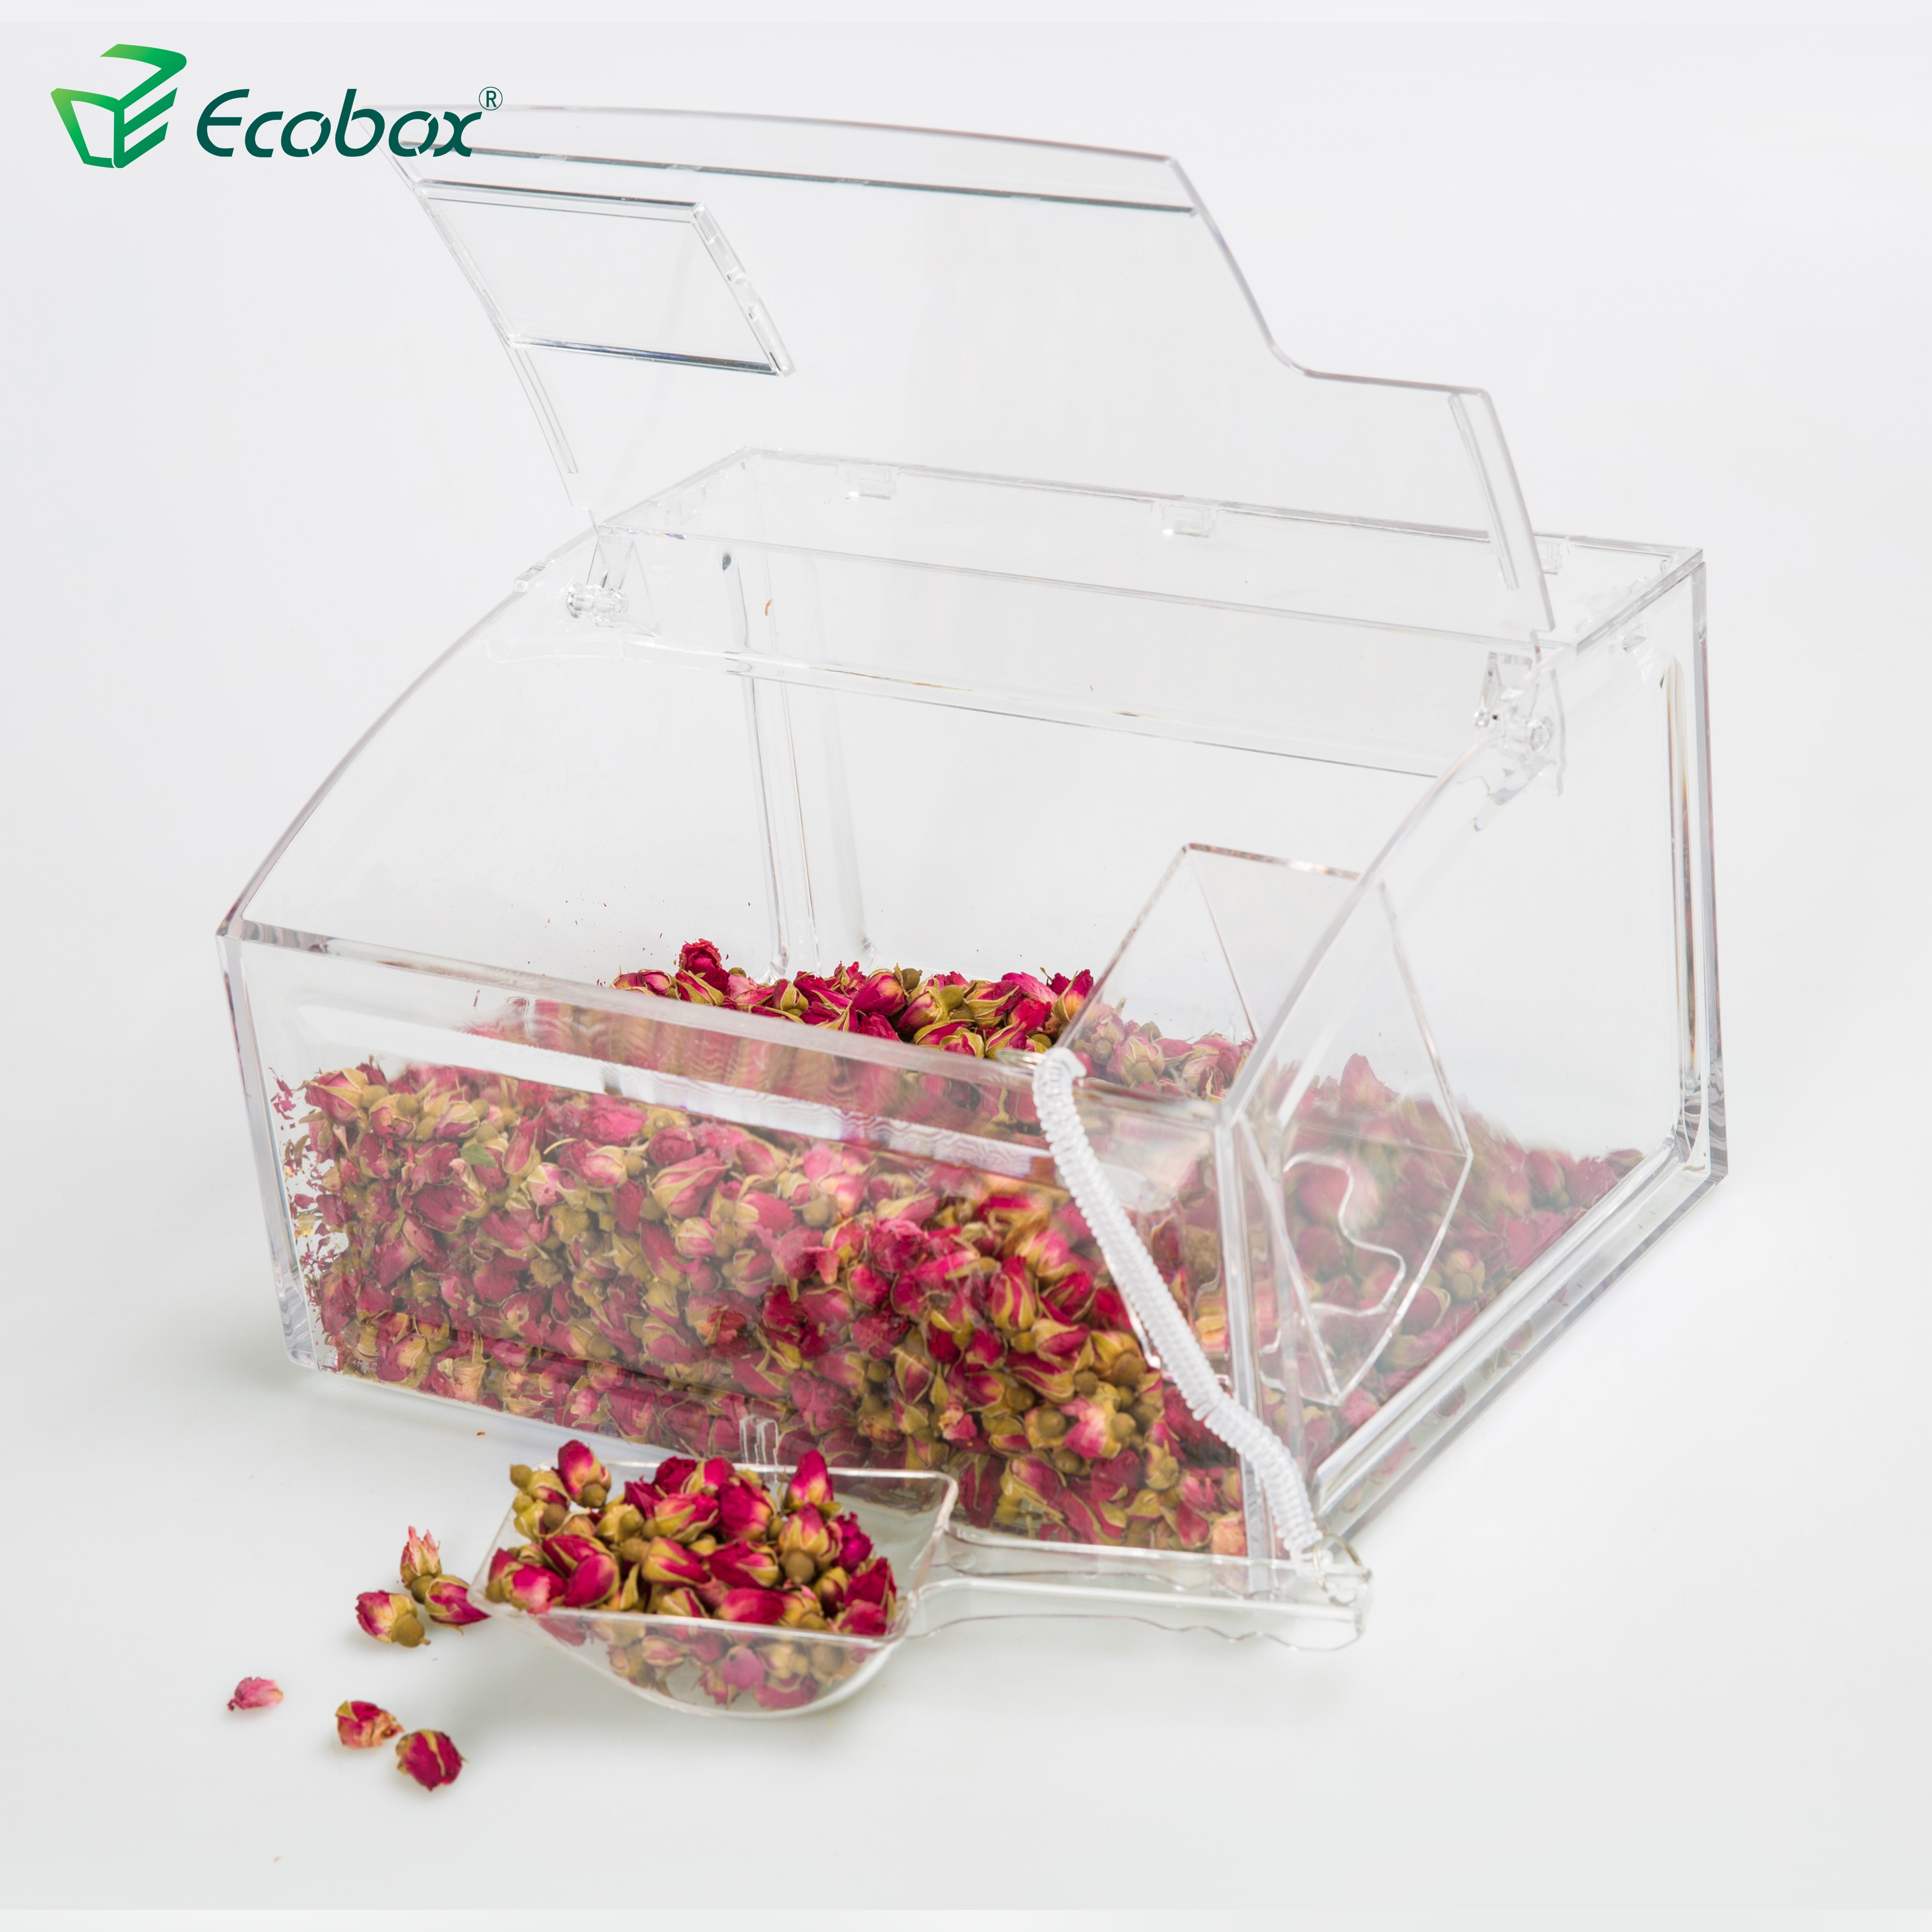 Ecobox Ecofriendly SPH-007 Supermarkt-Schaufelbehälter für Geschäfte 